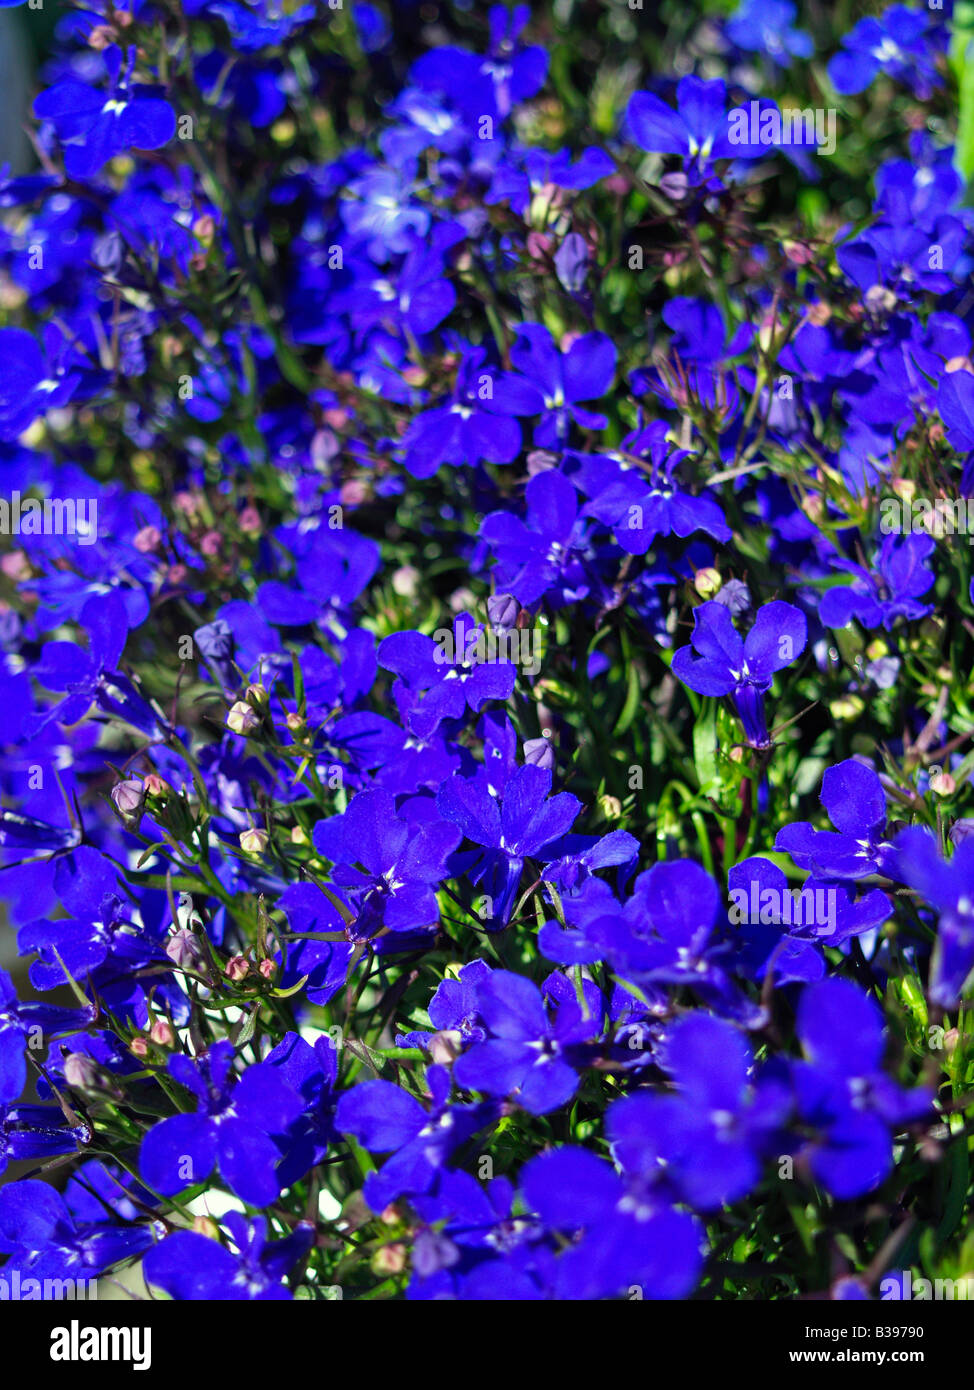 Maennertreu, Lobelia erinus, garden lobelia Stock Photo